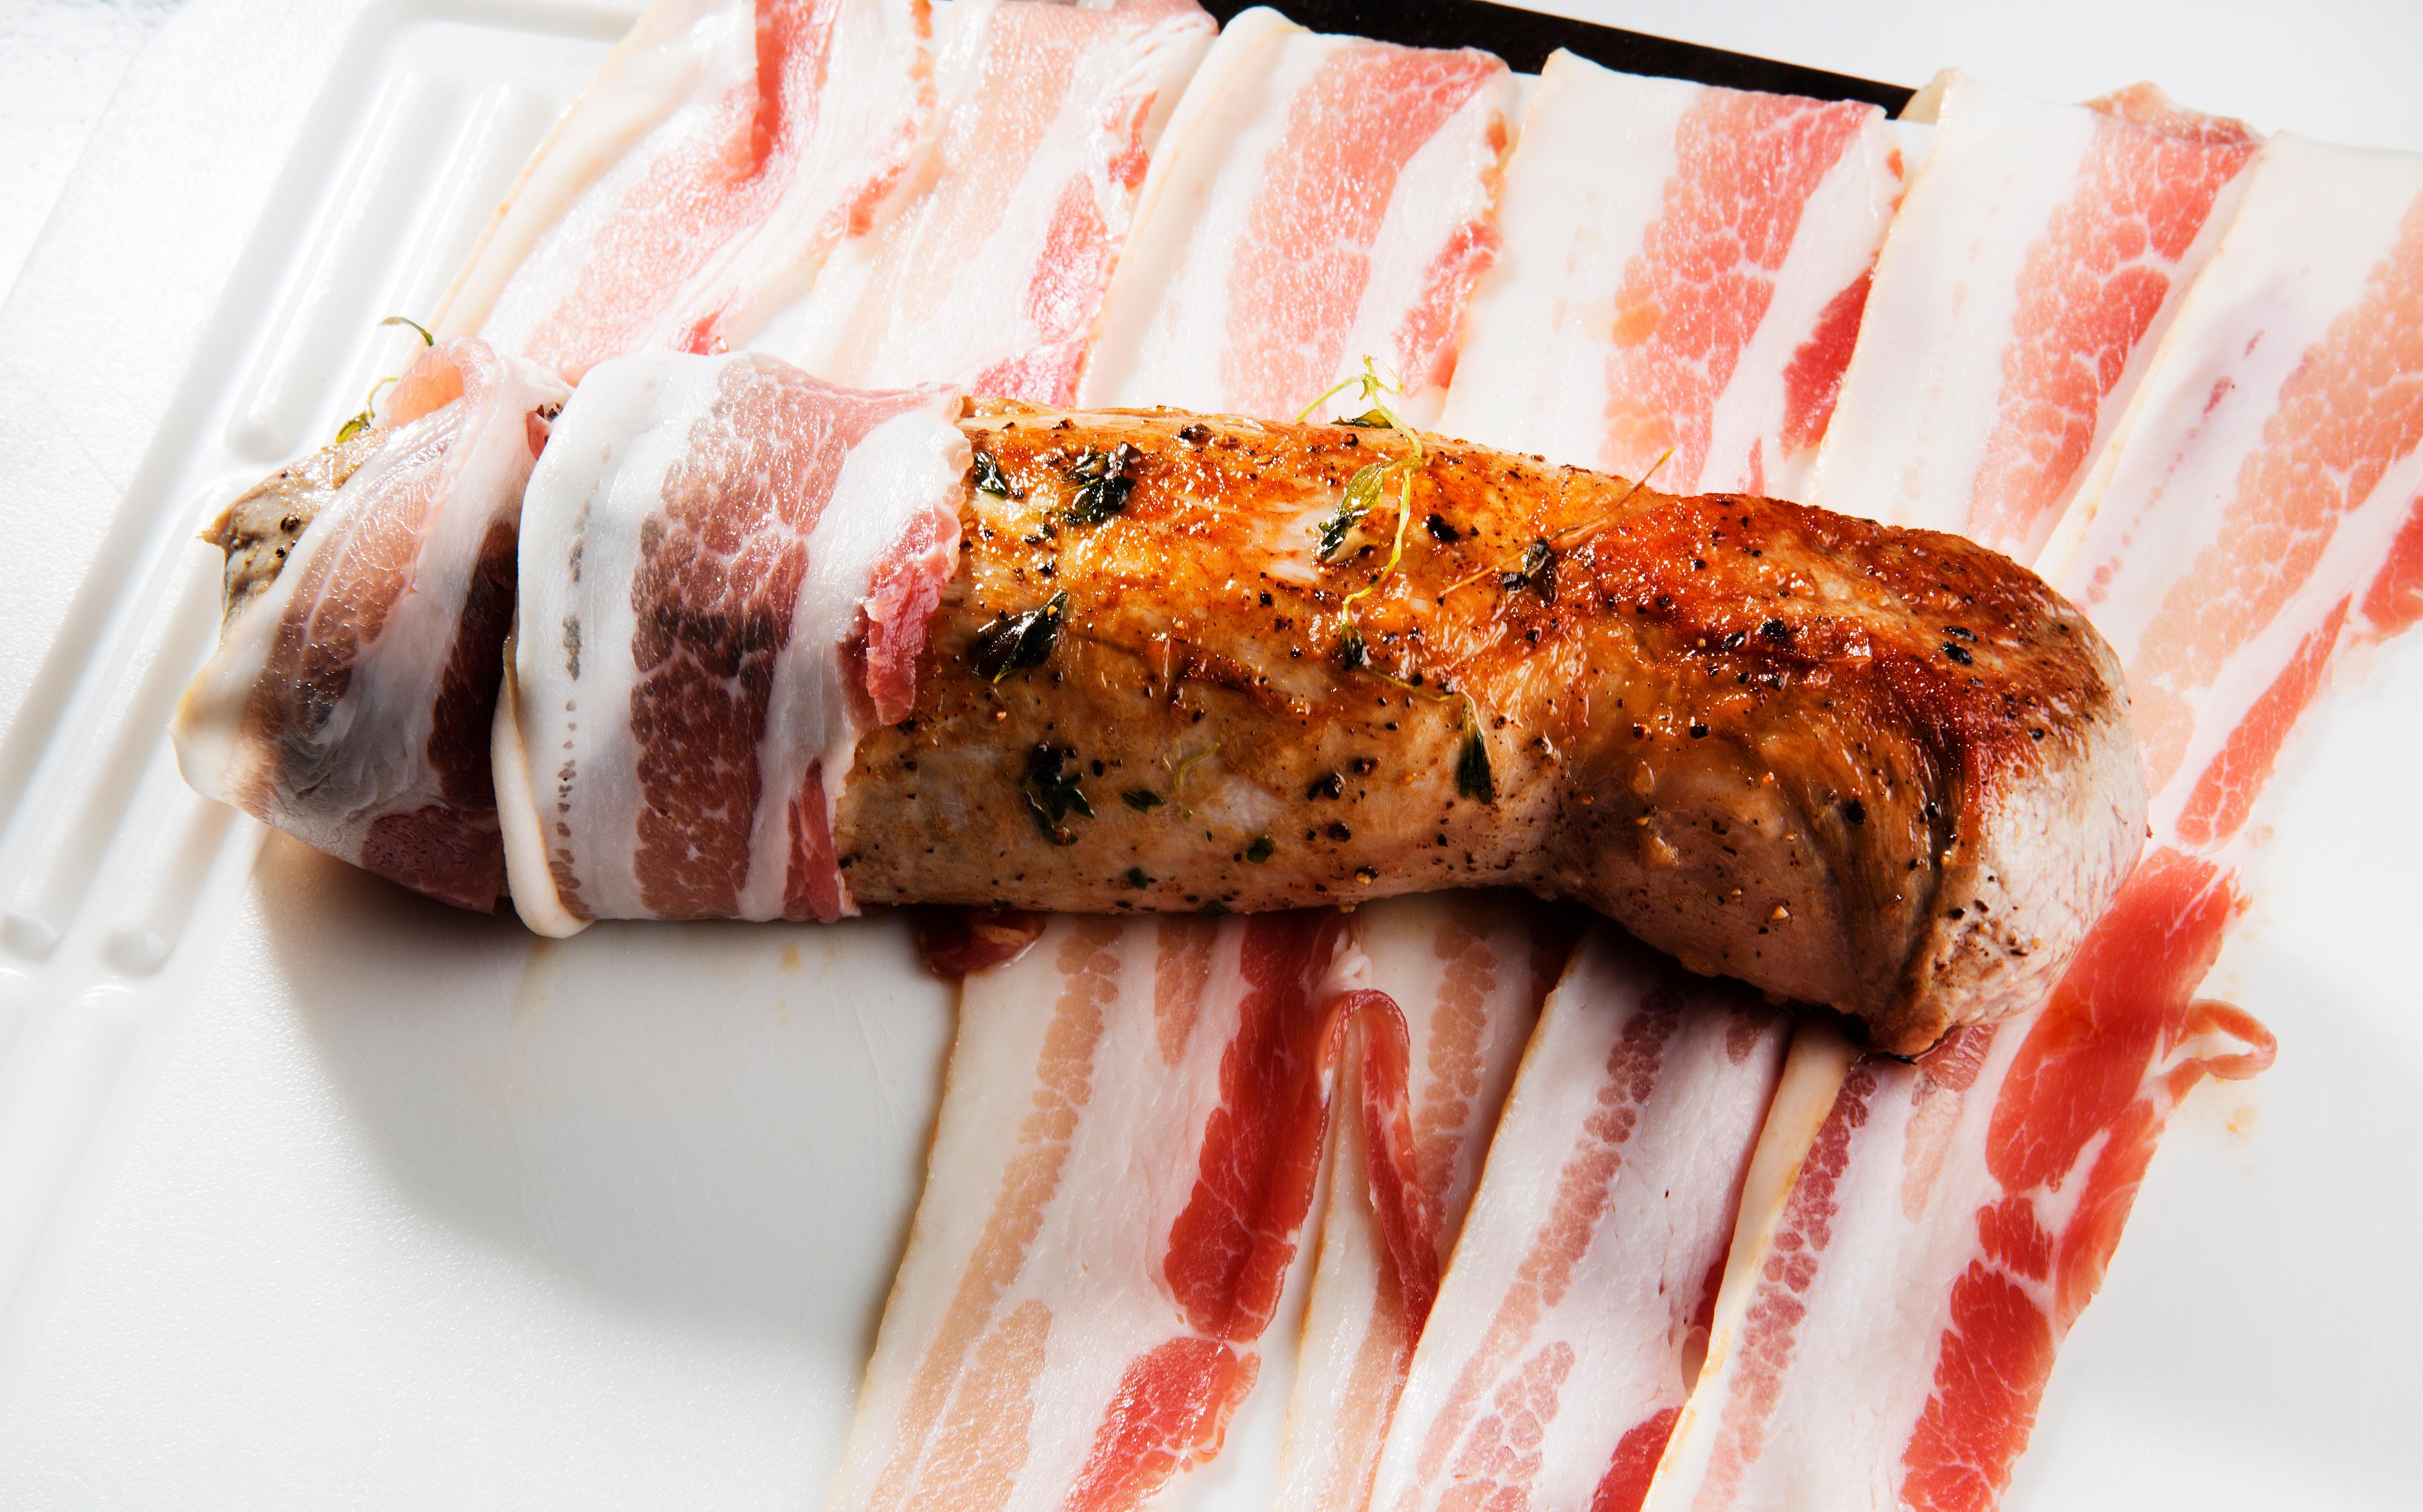 Legg et lag bacon på skjærefjølen og pakk inn filten. Etterstek i ovnen på 200 grader i ca. 20 min. La fileten hvile i ca. 10 minutter før den serveres med omeletten. Strø over frisk bladpersille og grønne oliven.